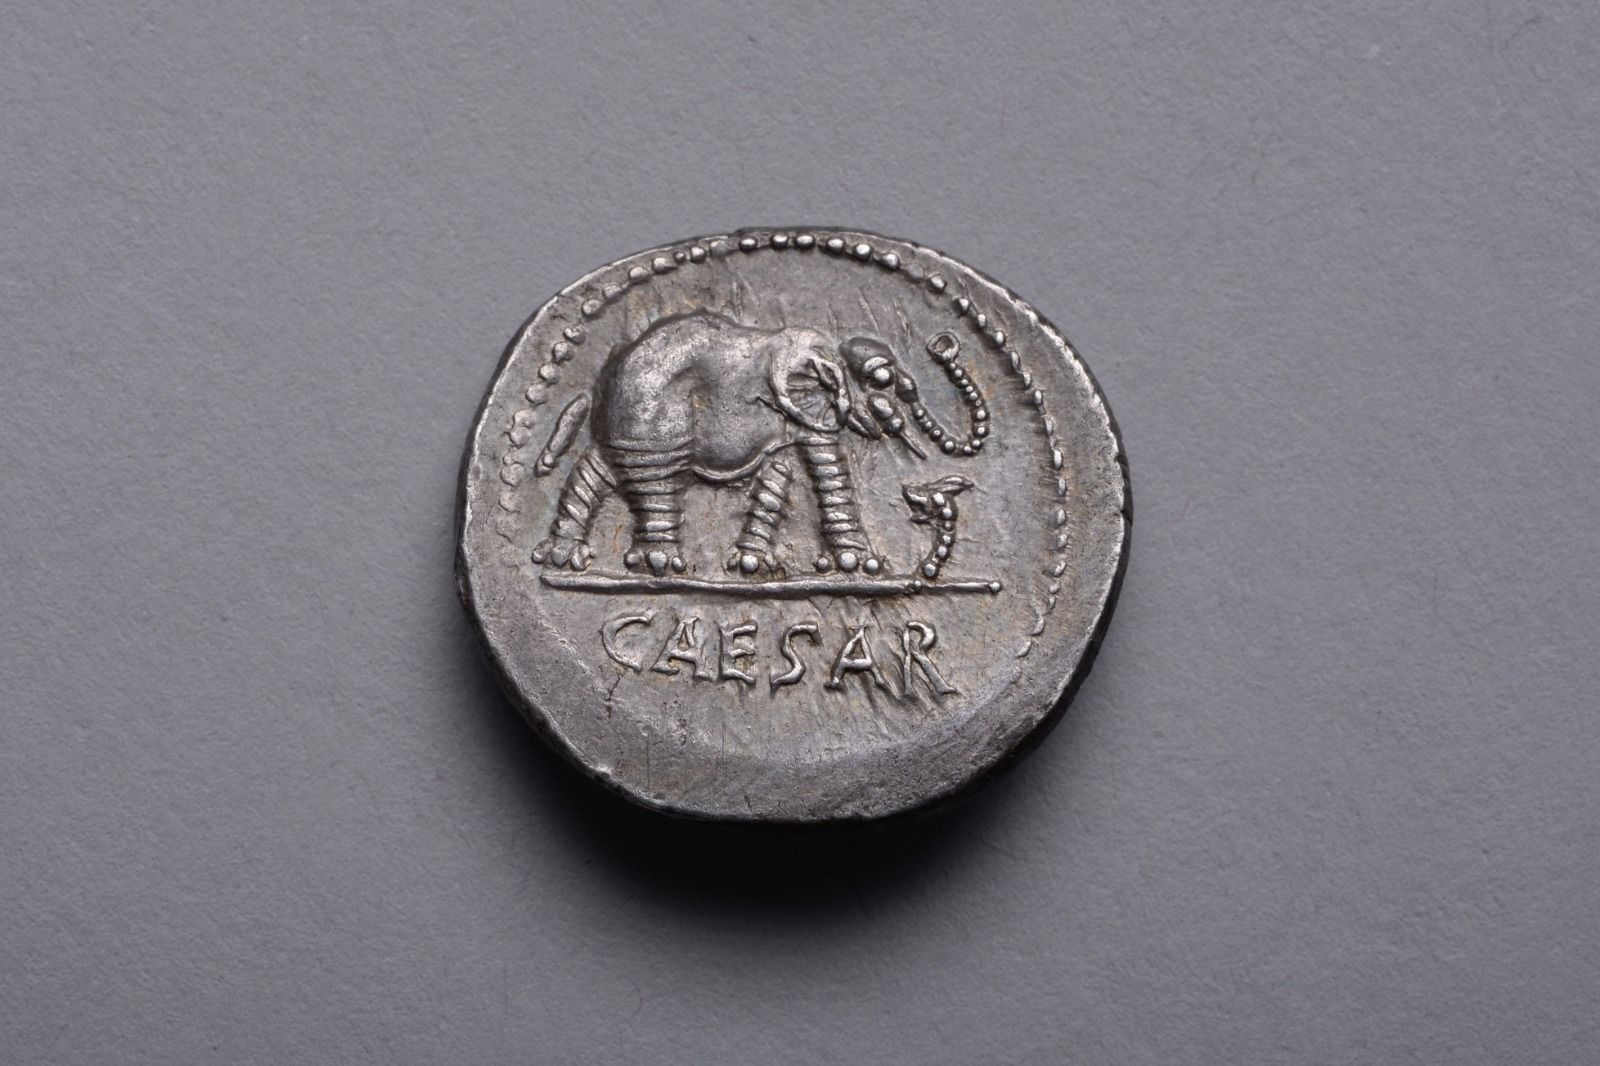 Exceptional Ancient Roman Silver Elephant Denarius Coin of Julius Caesar - 49 BC